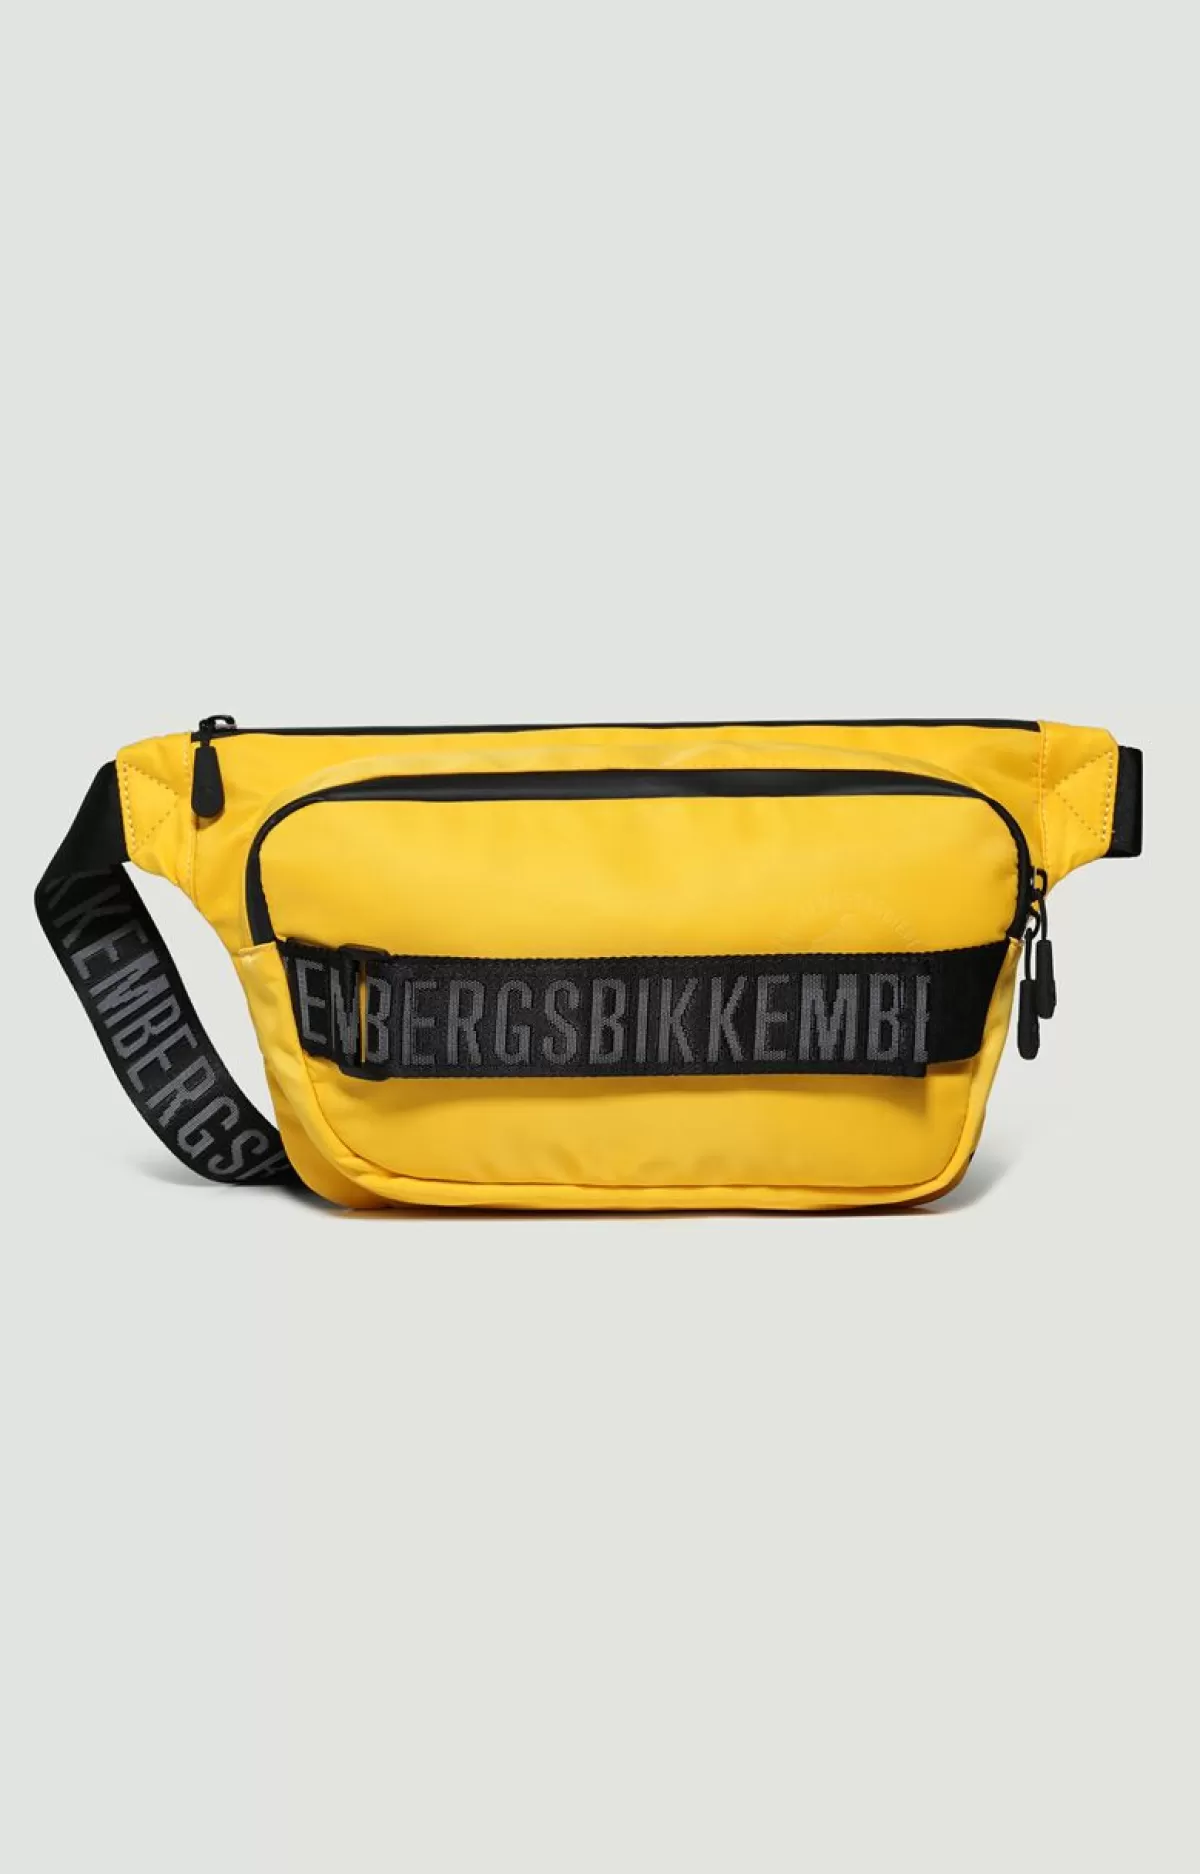 Bikkembergs Men'S Bum Bag - Hovan Yellow New